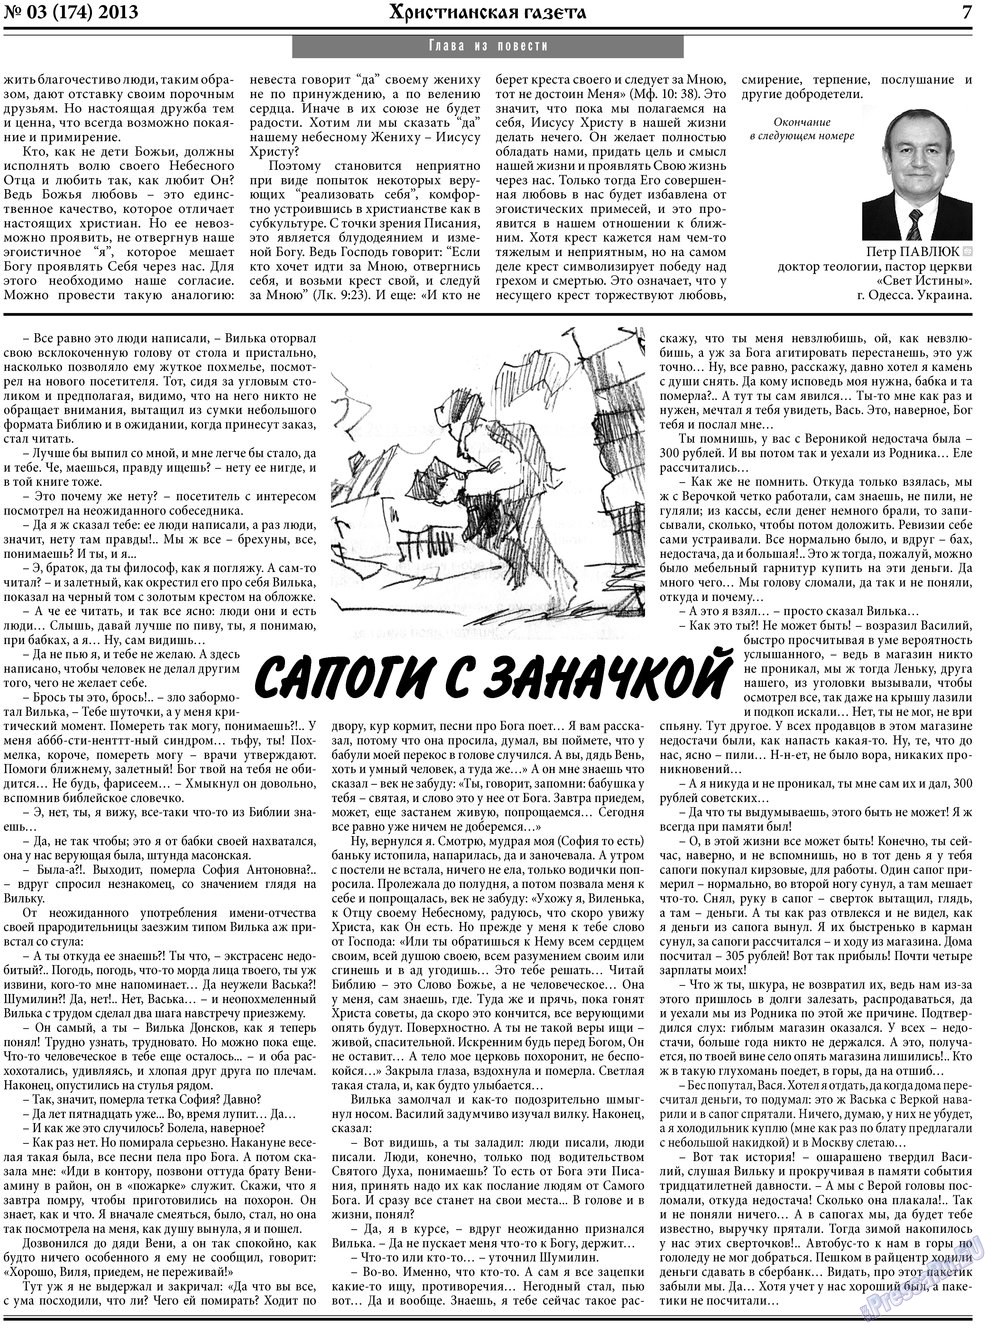 Христианская газета (газета). 2013 год, номер 3, стр. 7